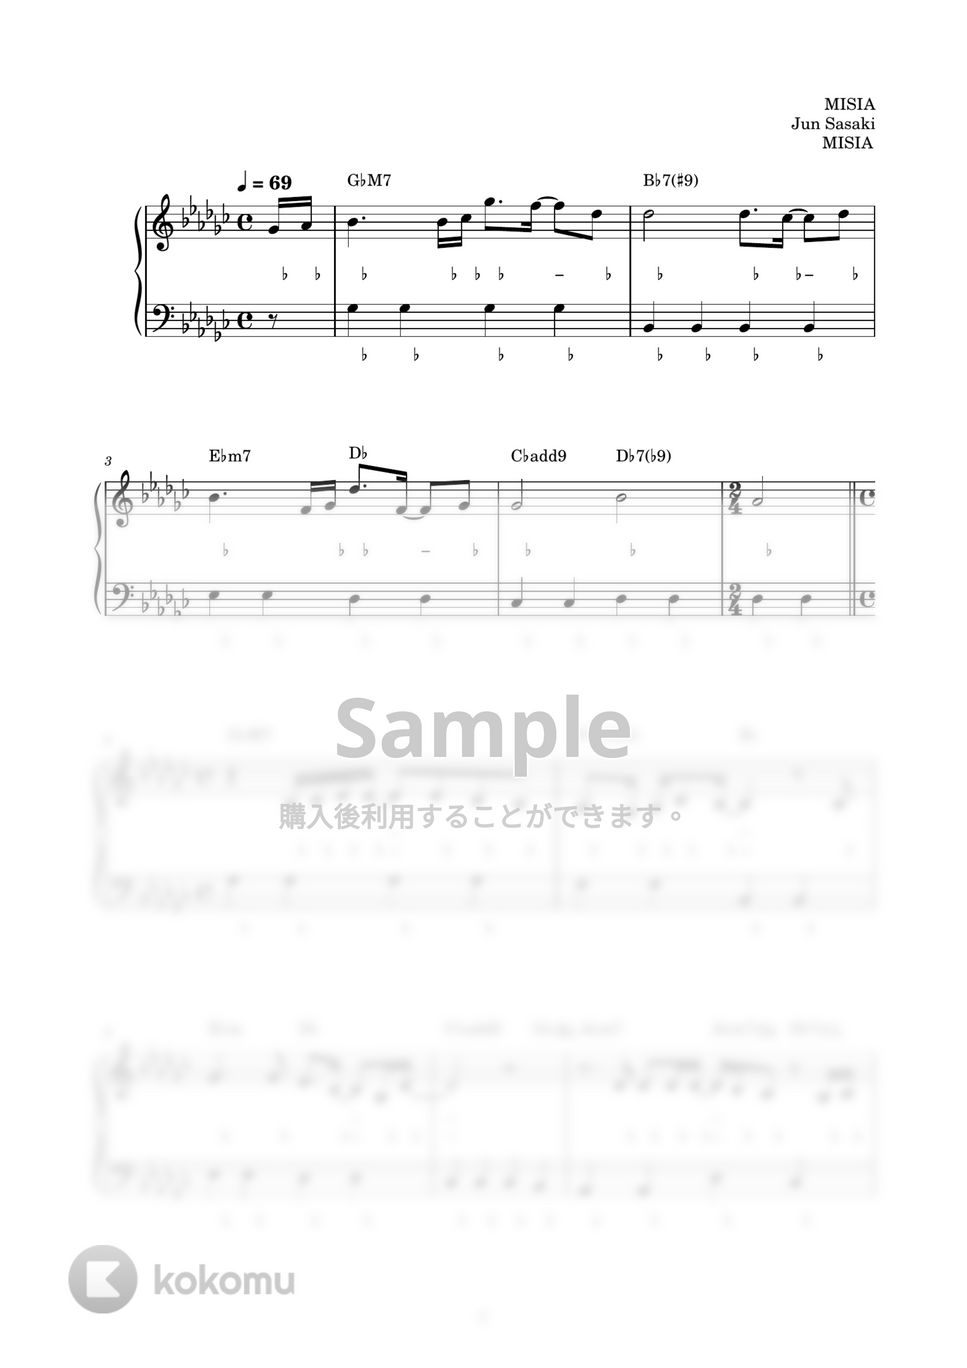 MISIA - 逢いたくていま (ピアノ楽譜 / かんたん両手 / 歌詞付き / ドレミ付き / 初心者向き) by piano.tokyo